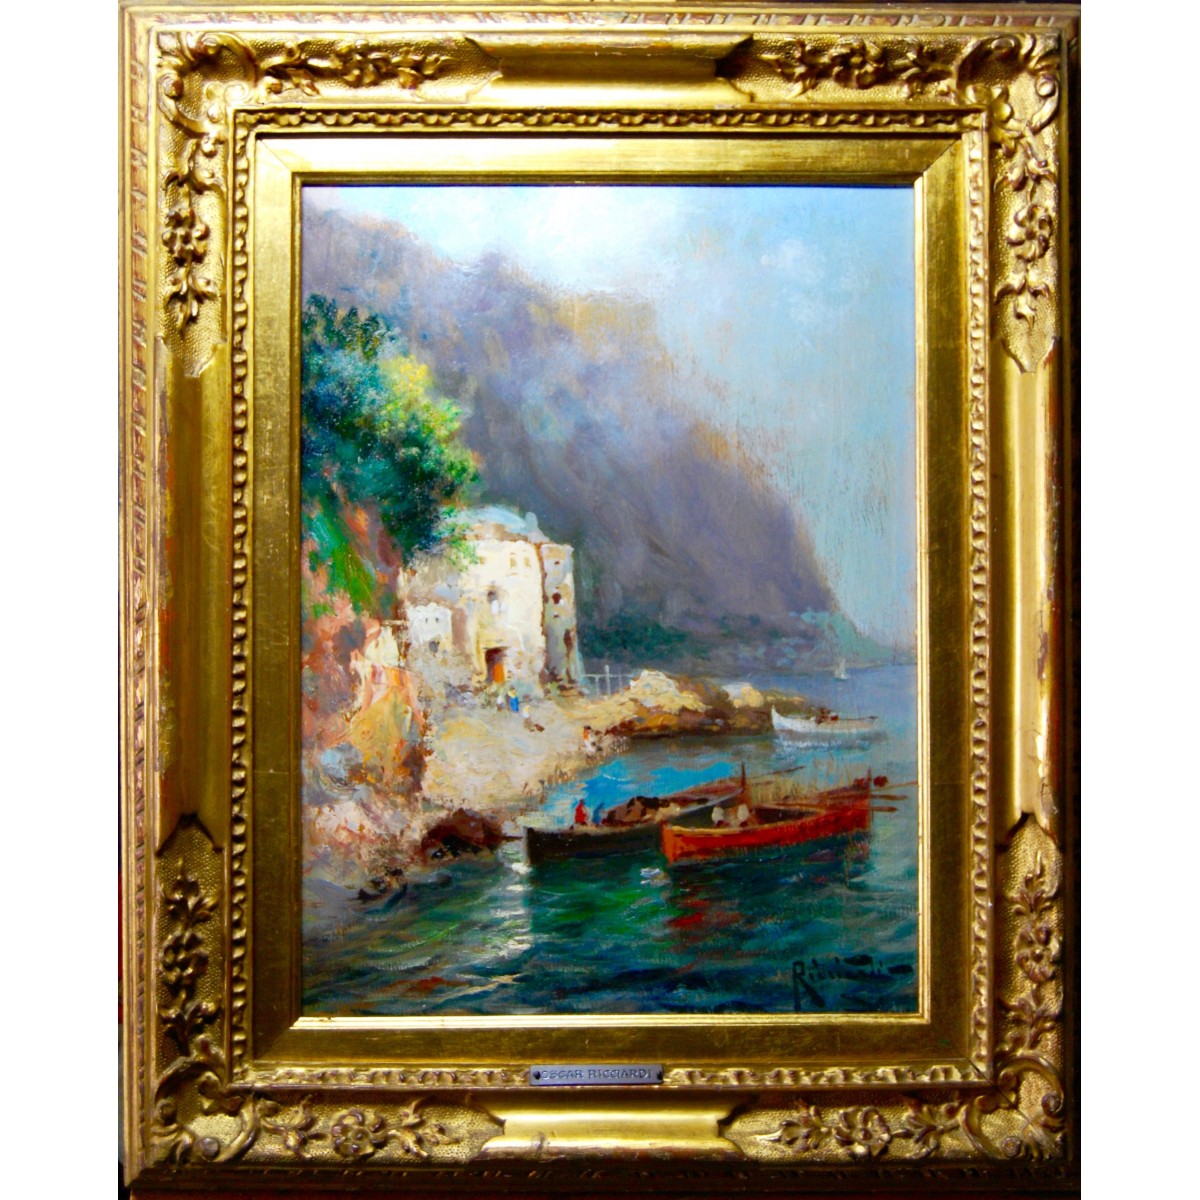 Oscar Ricciardi (Napoli, 24 febbraio 1864 – Napoli, 1935), “Marina”, óleo sobre tabla.